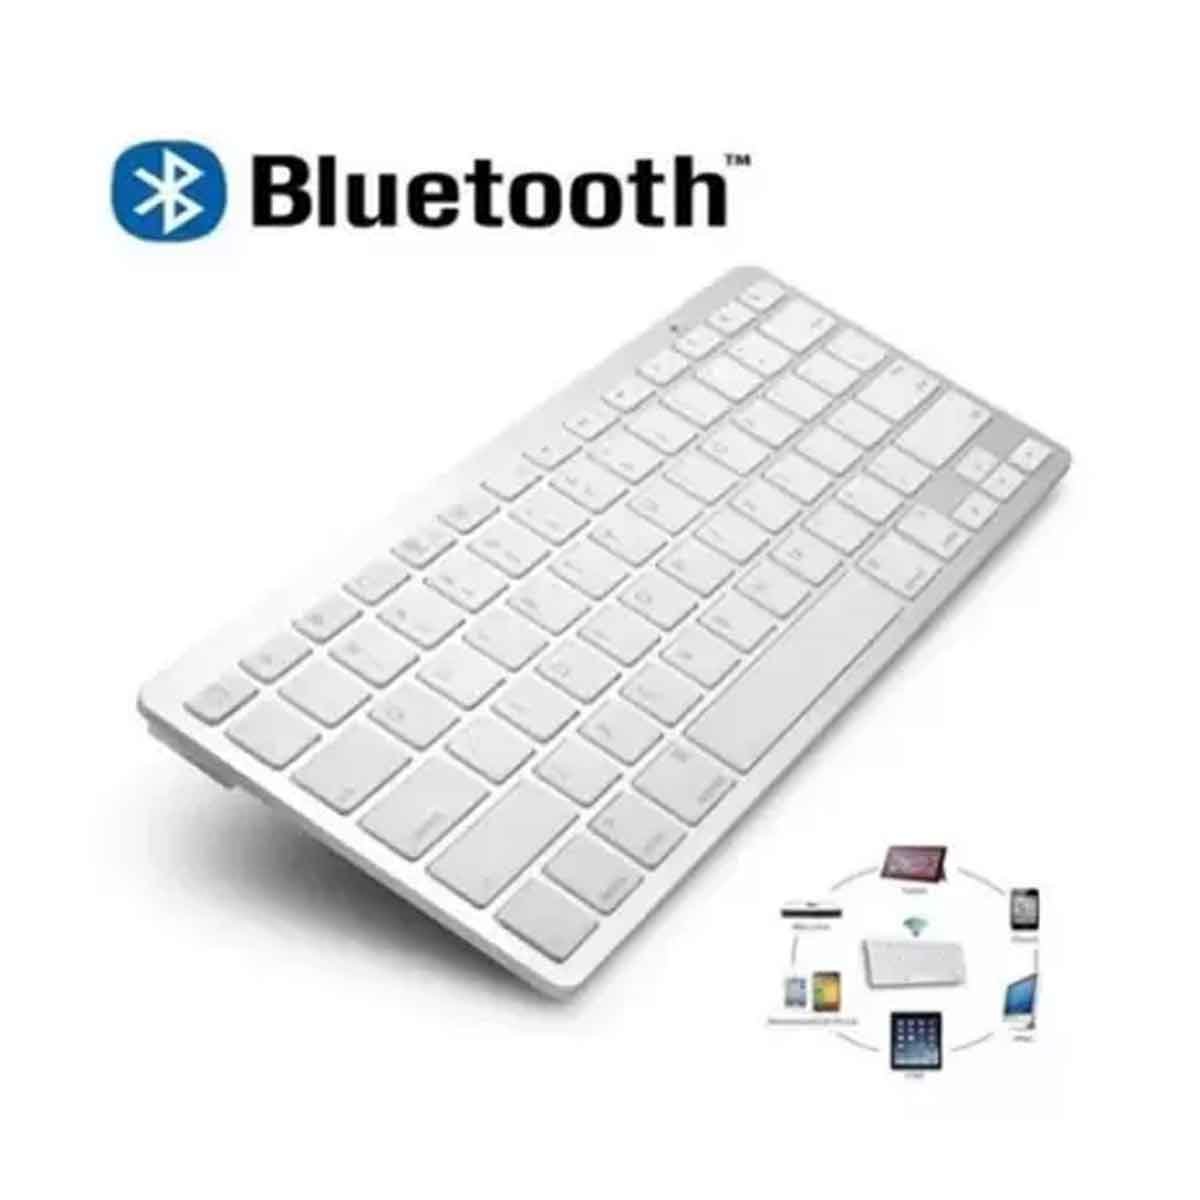 06 teclado portatil sem fio bluetooth tablet celular notebook